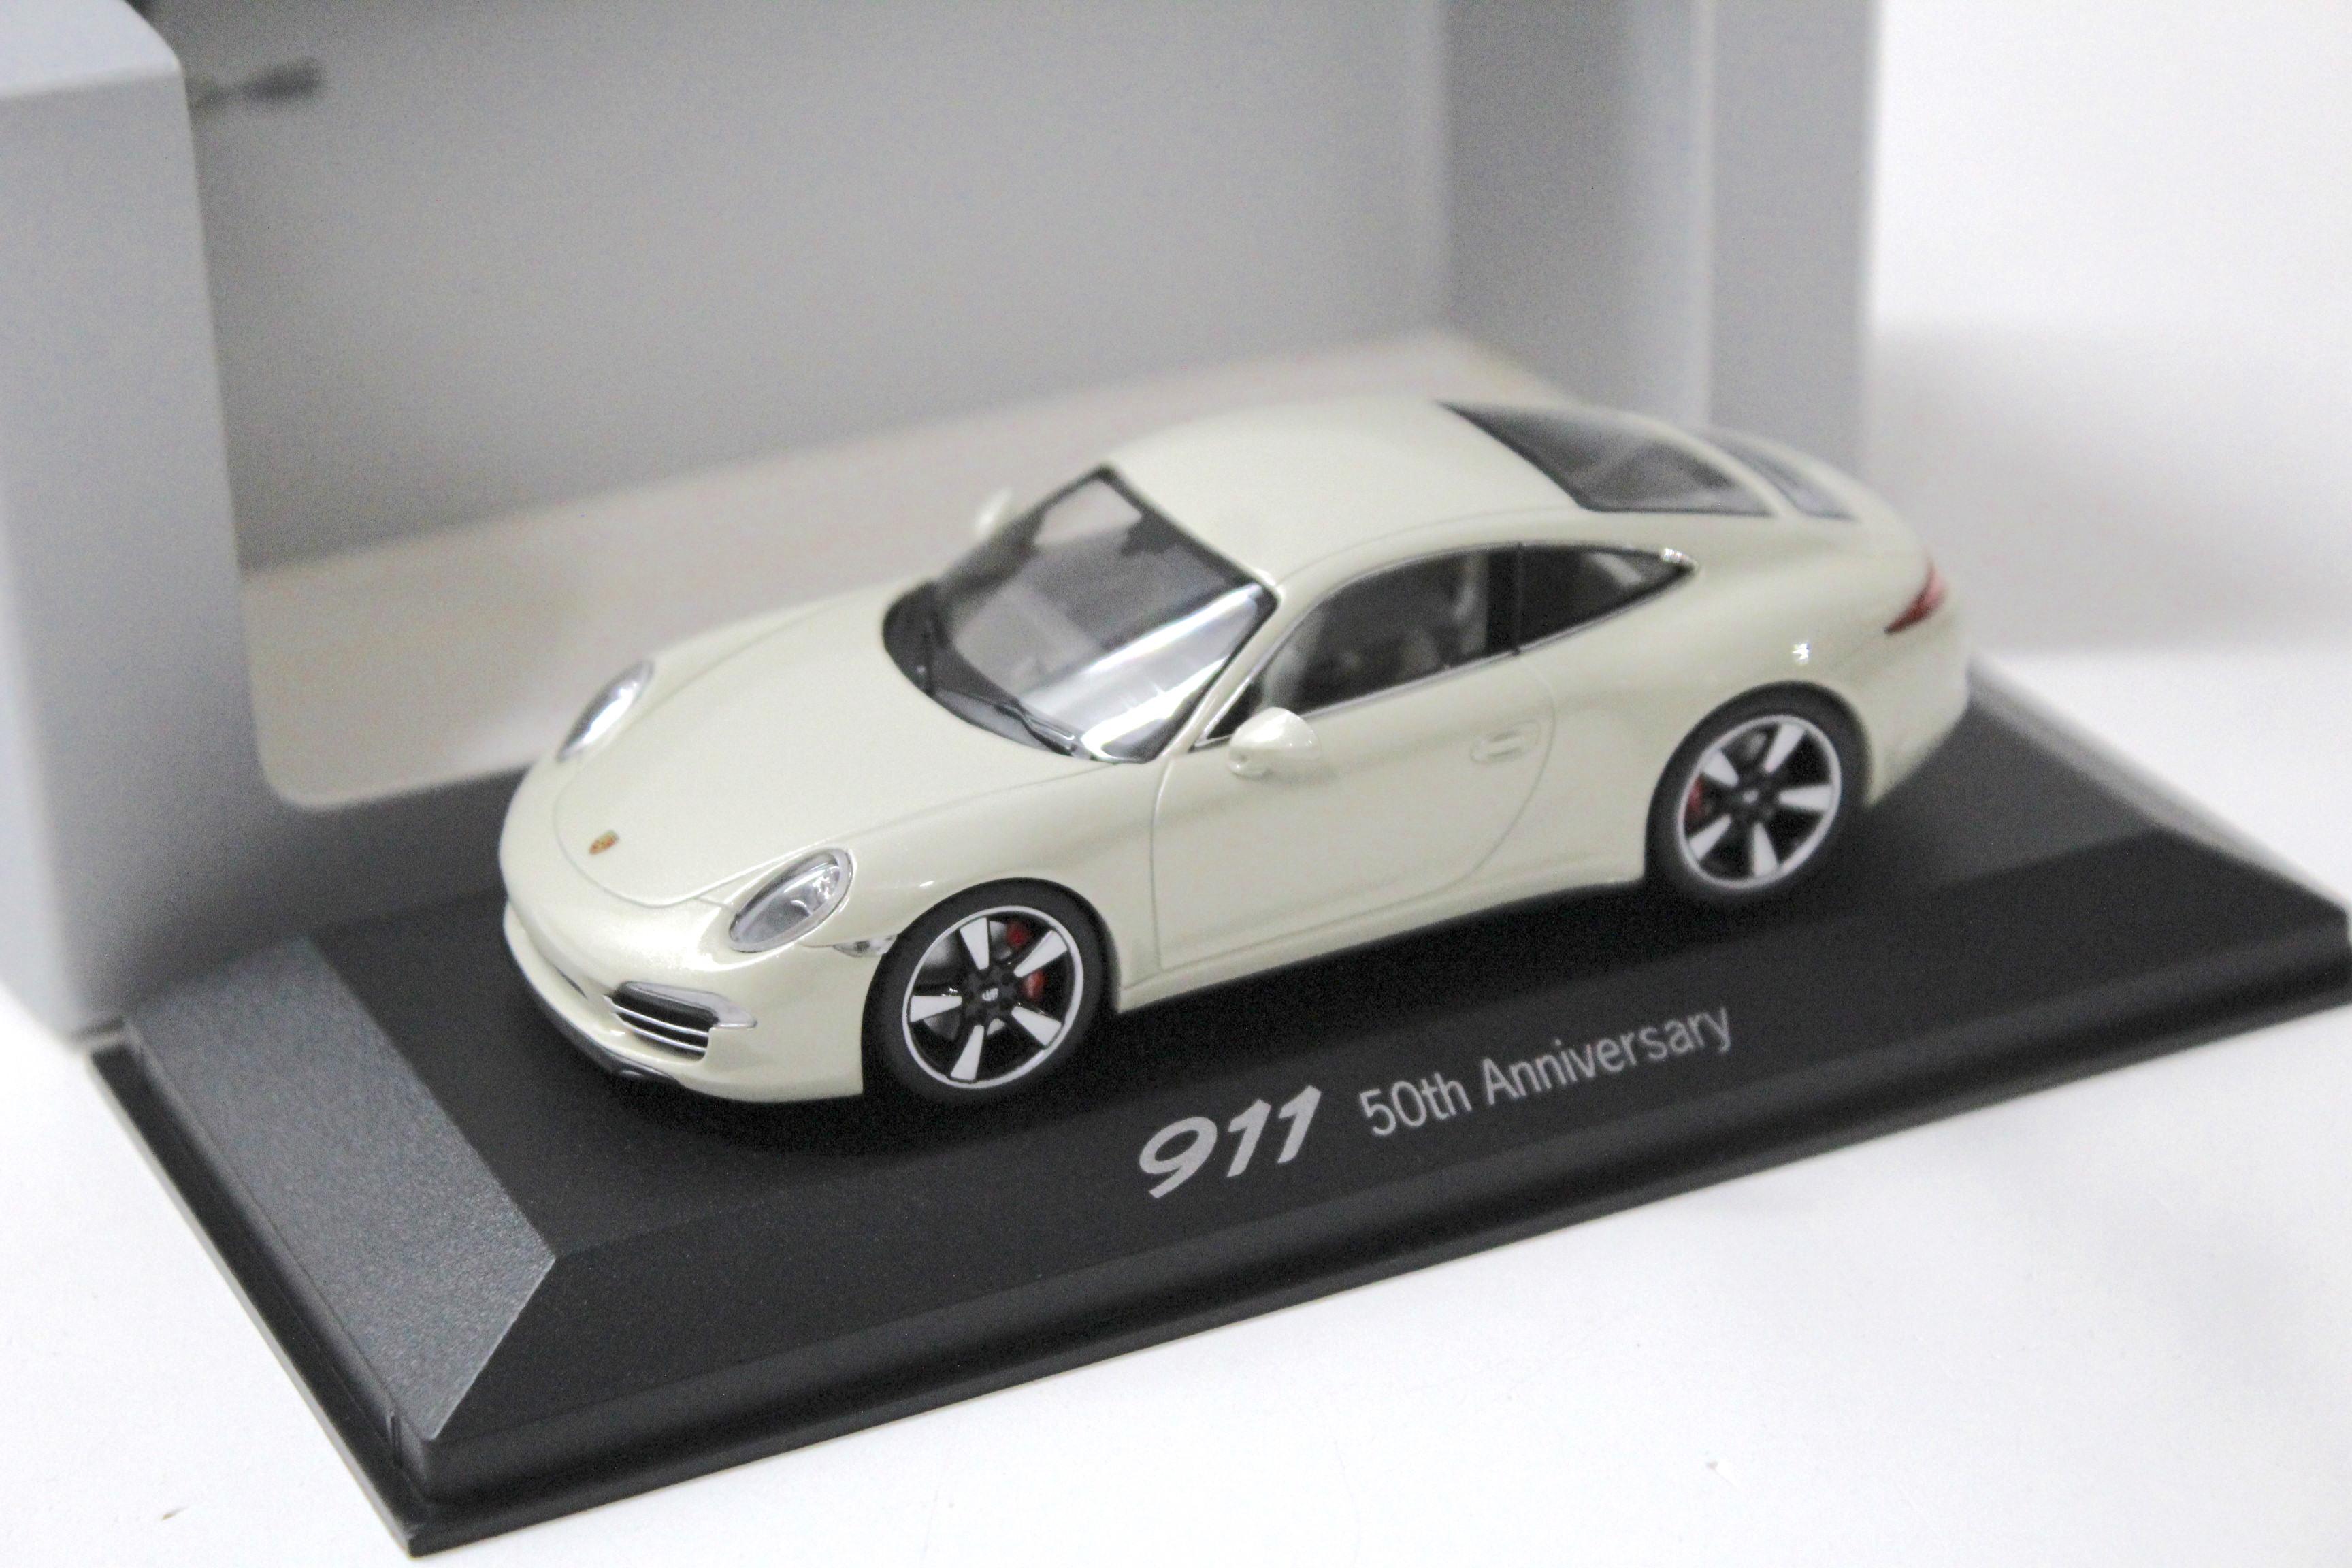 1:43 Minichamps Porsche 911 (991) Carrera "50th Anniversary" pearl white DEALER VERSION